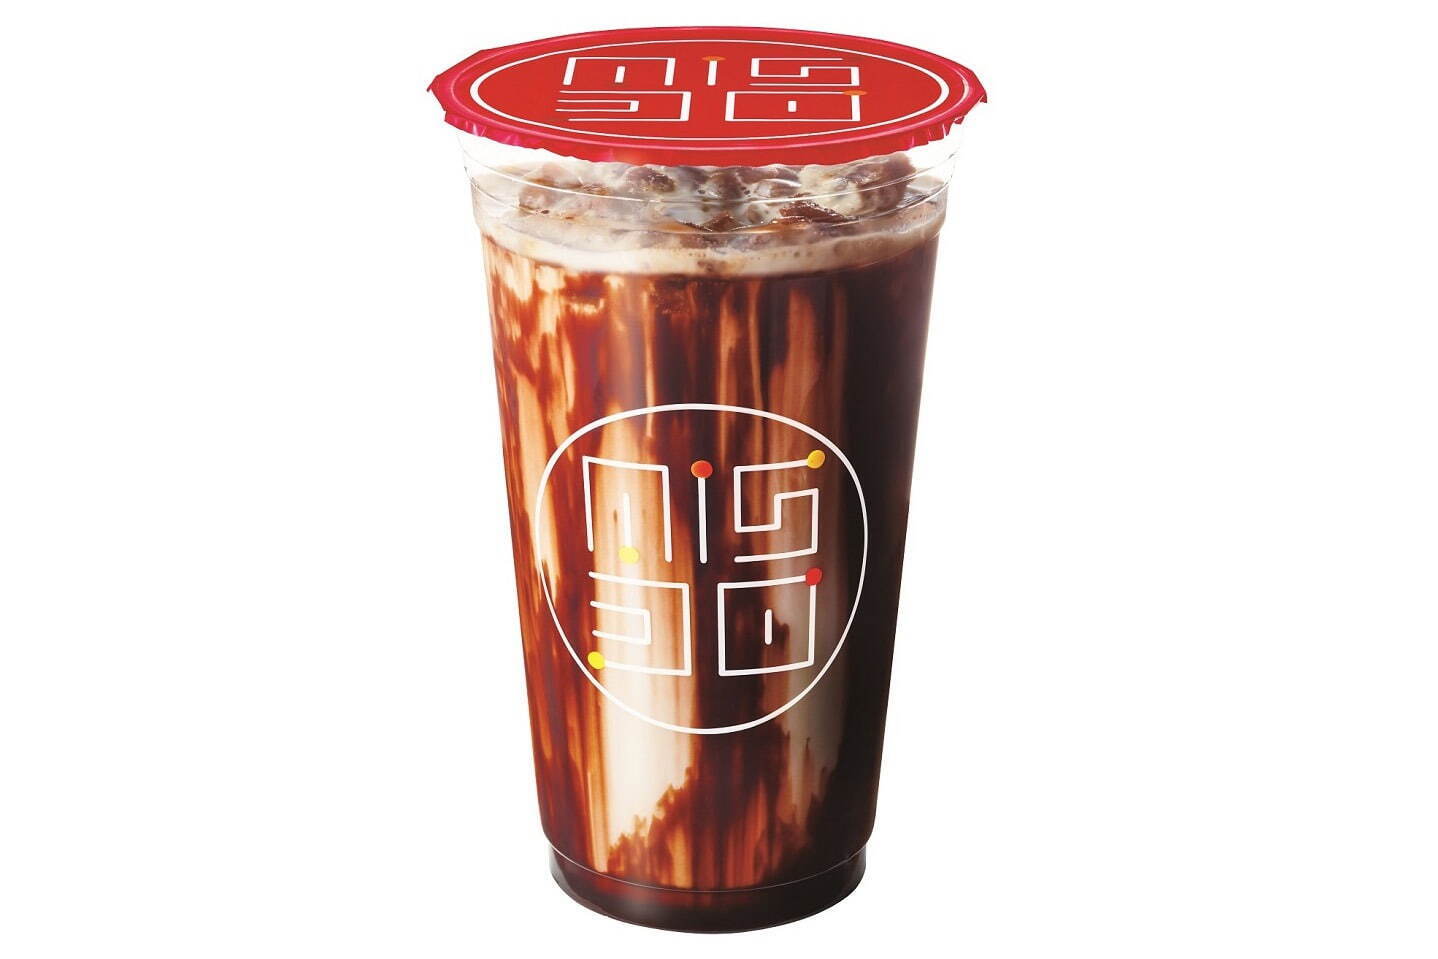 「ダブル氷コーヒー カフェモカ」テイクアウト 486円、イートイン 495円